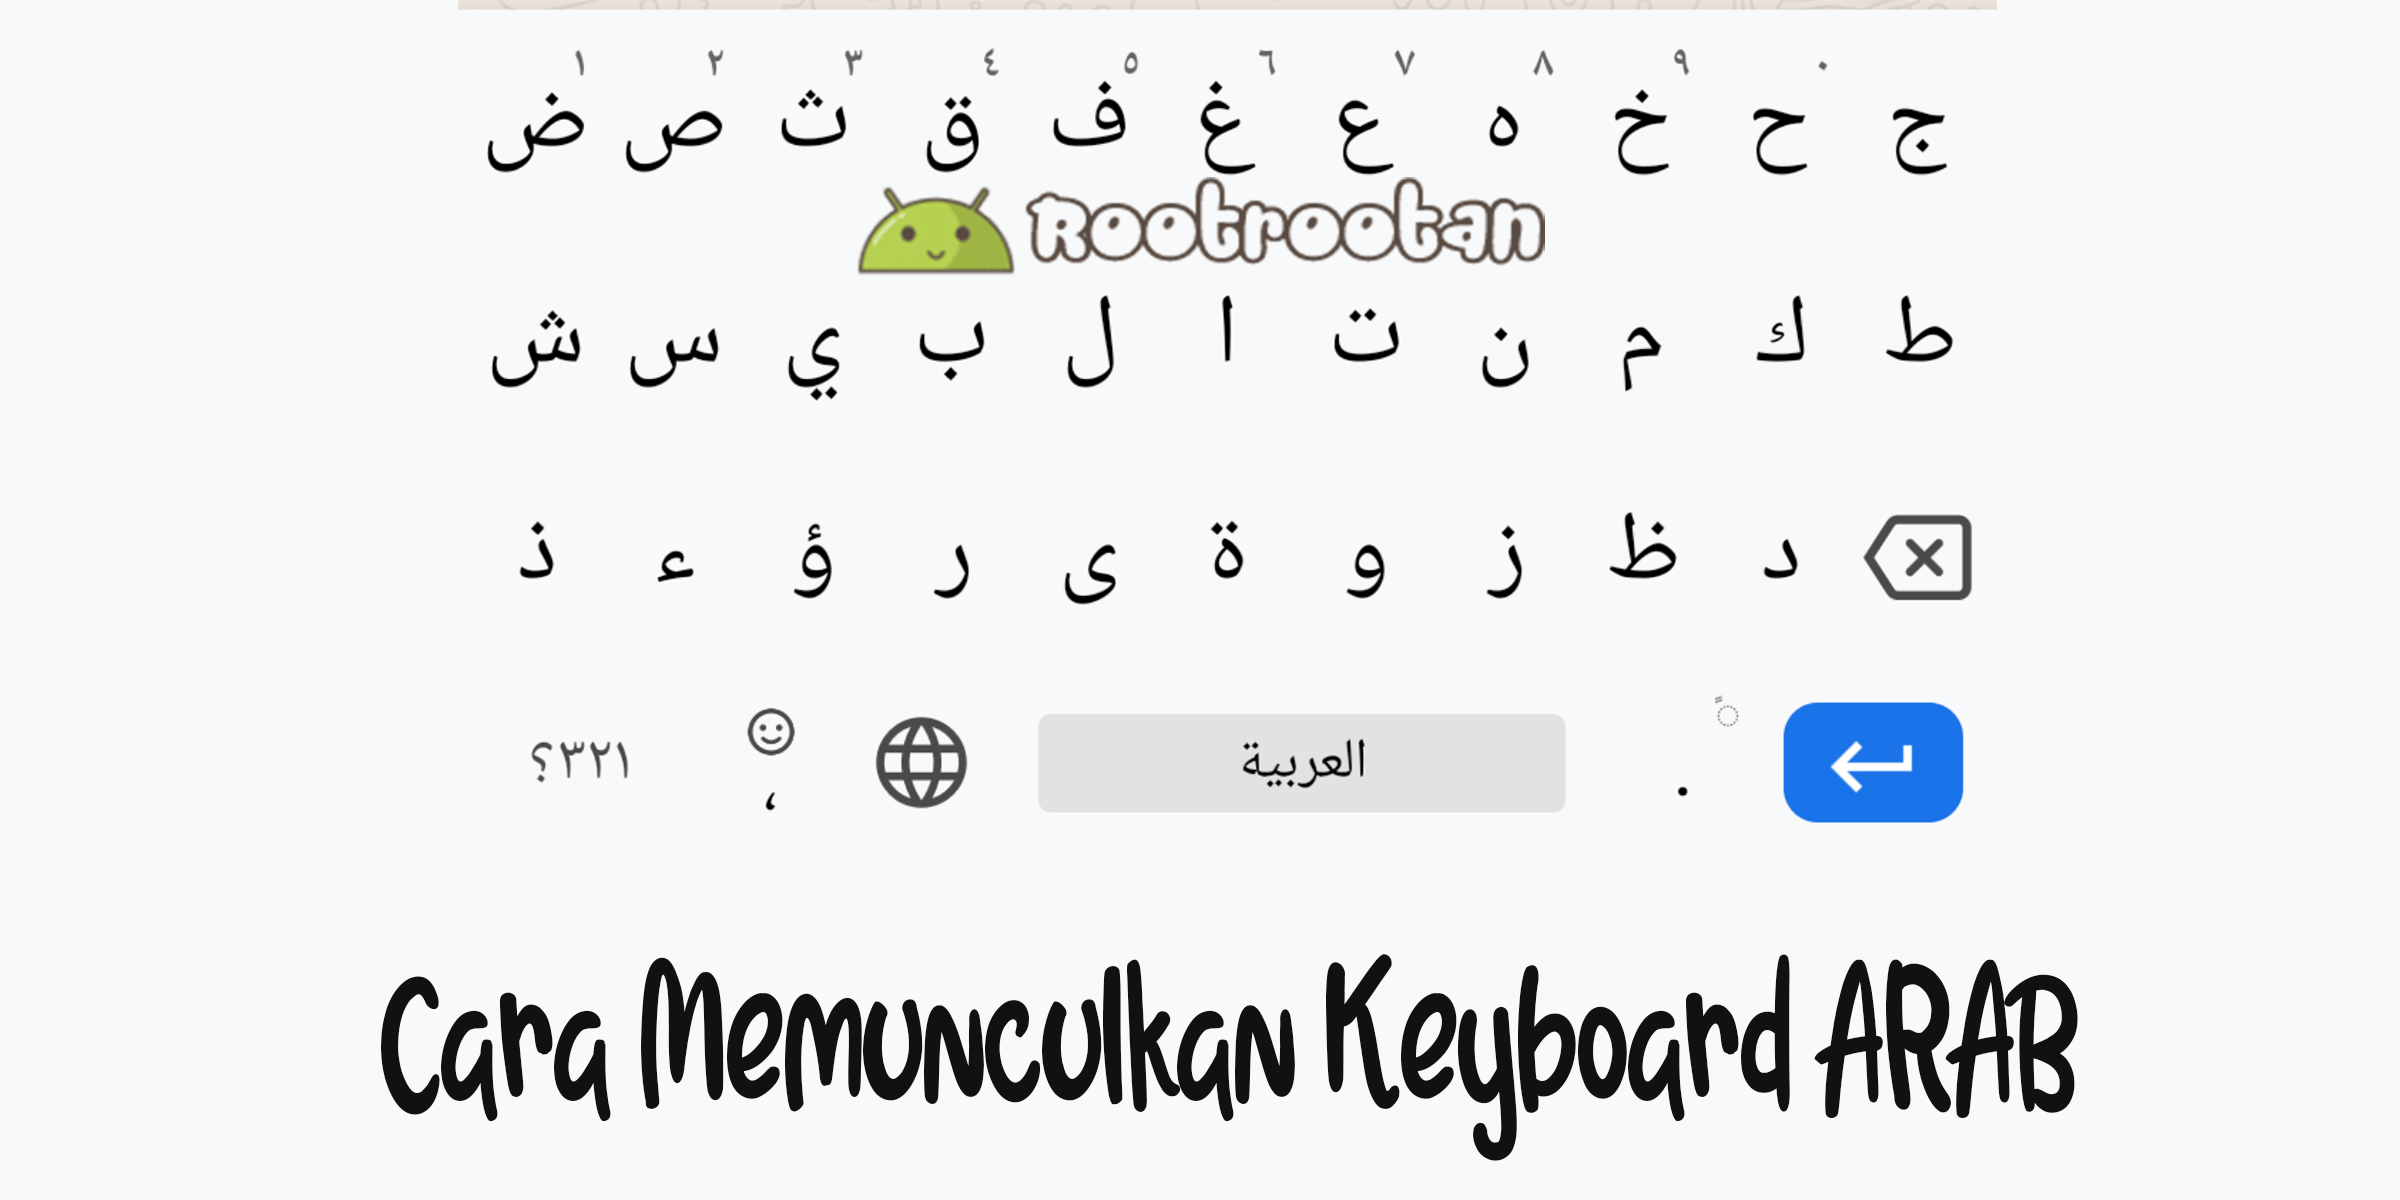 keyboard arab